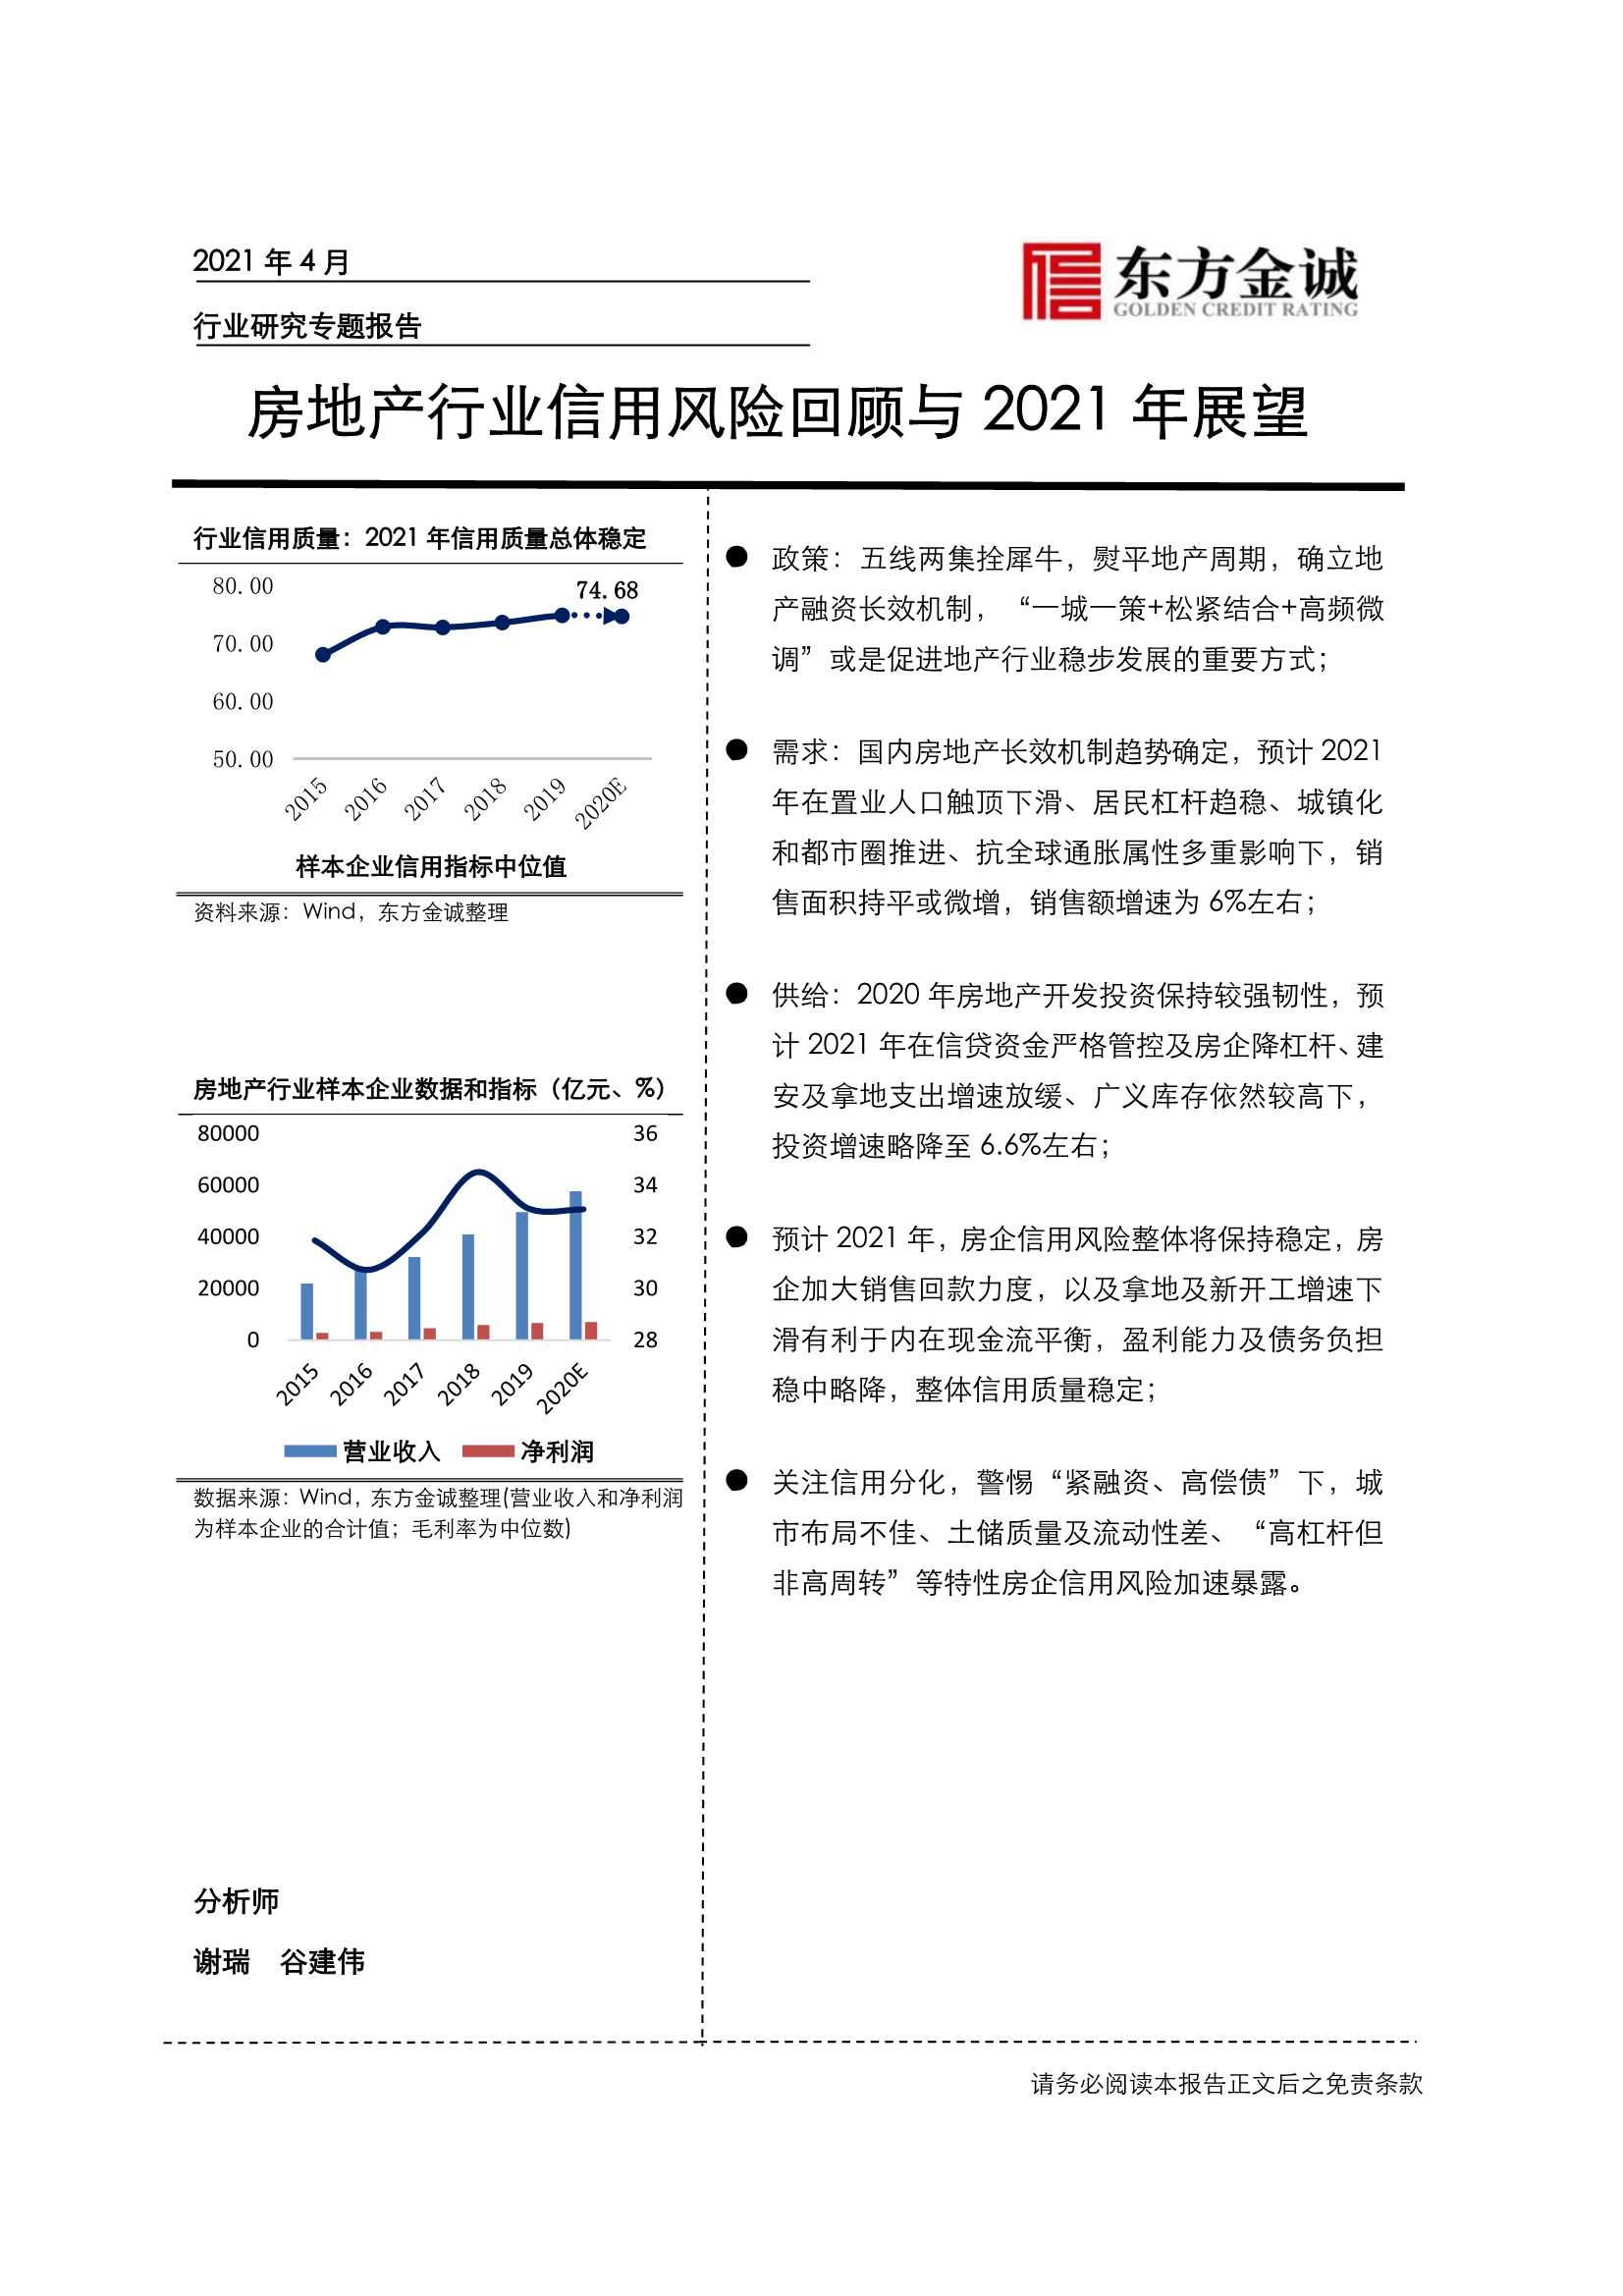 东方金诚-房地产行业信用风险回顾与2021年展望-2021.05-18页